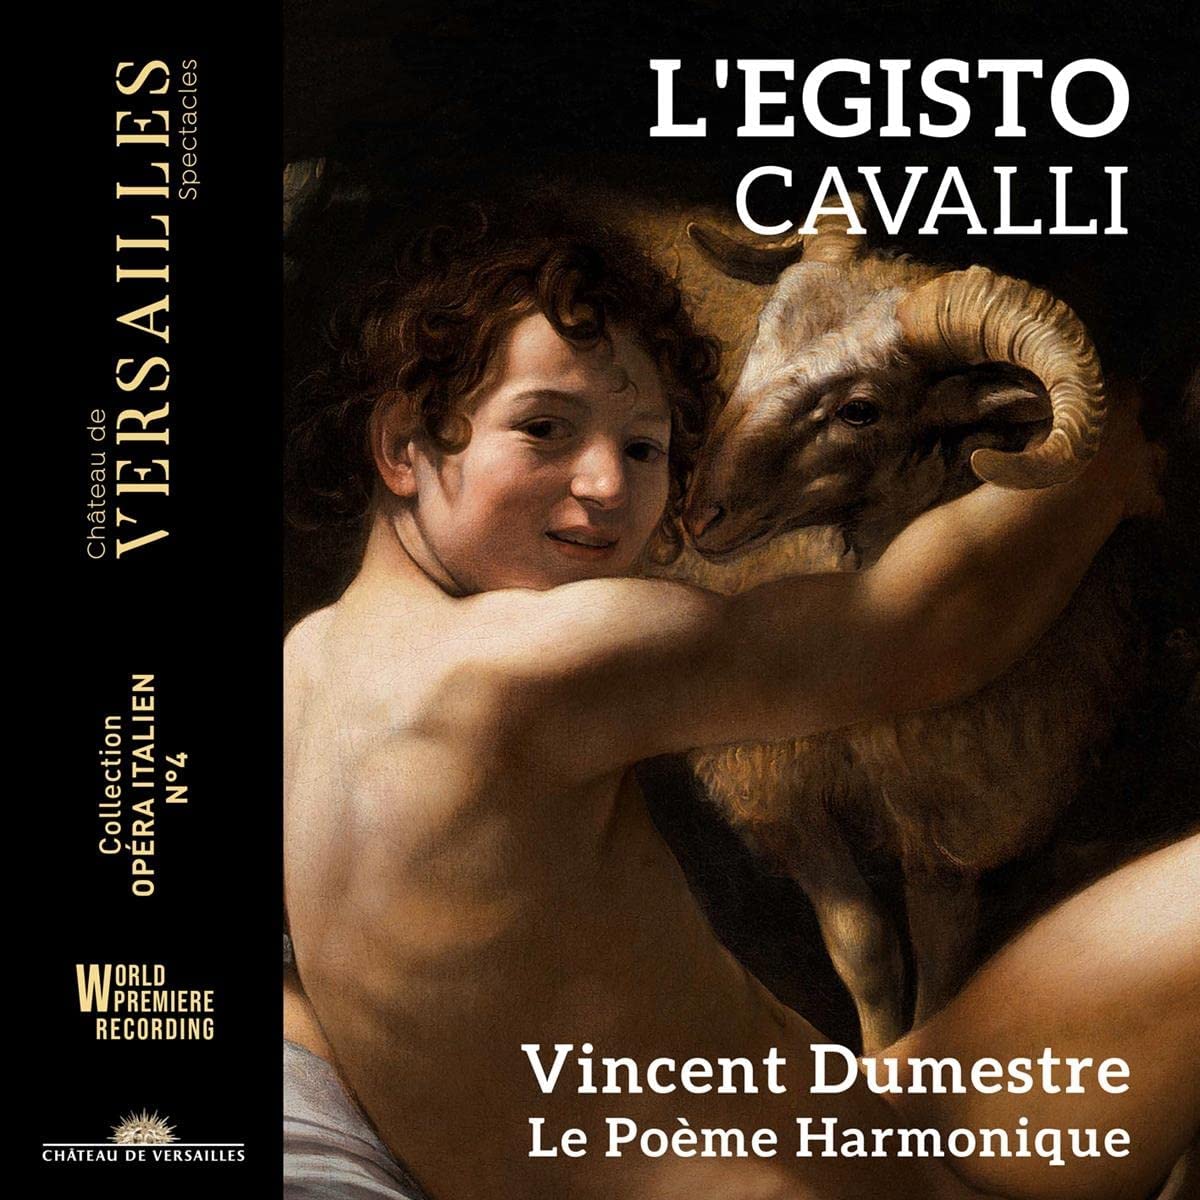 Le Poeme Harmonique / Vincent Dumestre - Cavalli: L'egisto